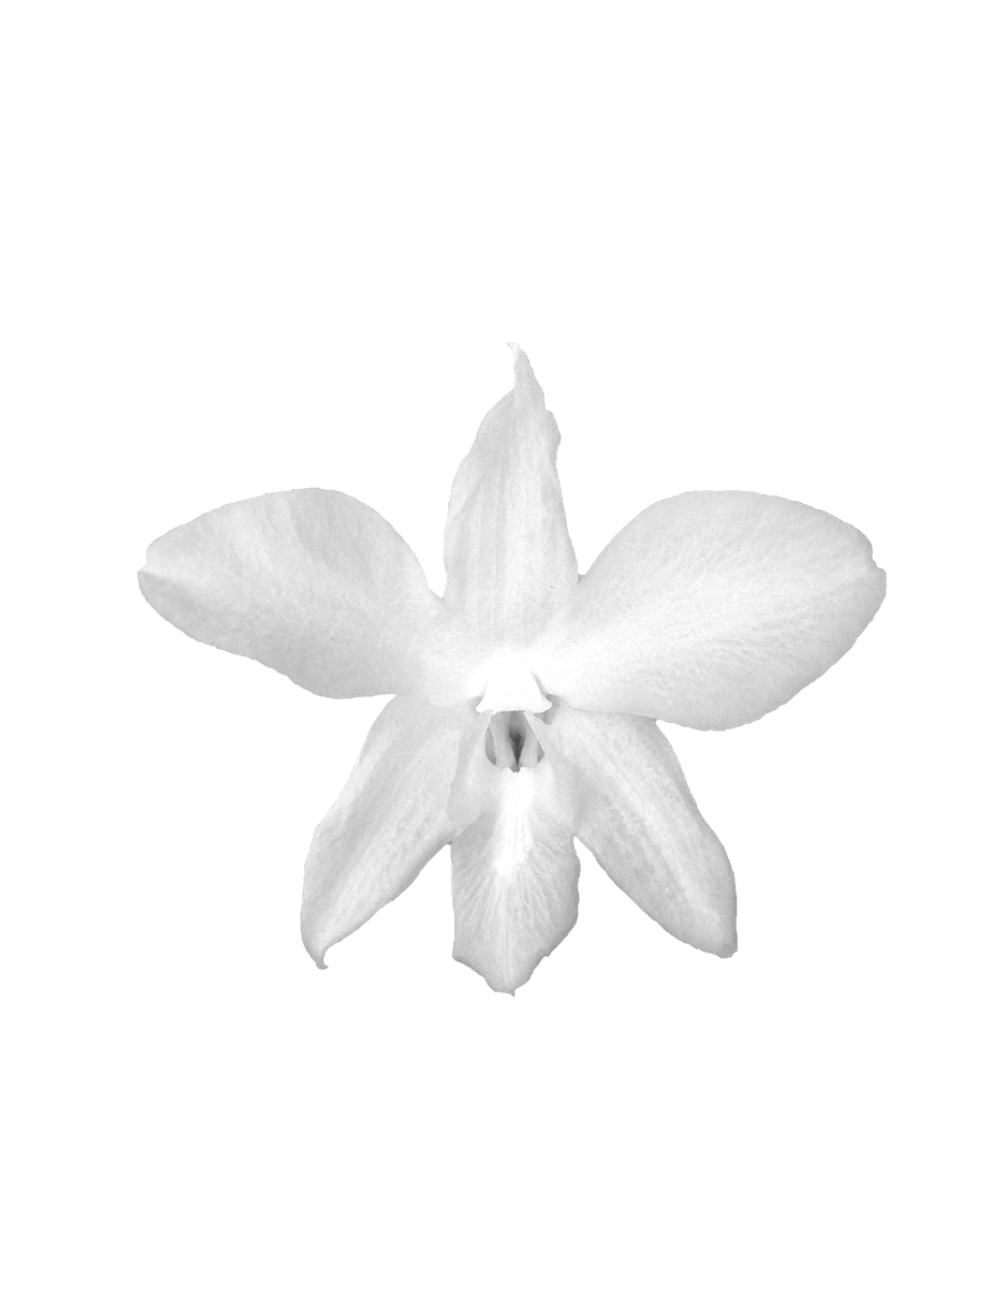 Orchidée Stabilisée blanche